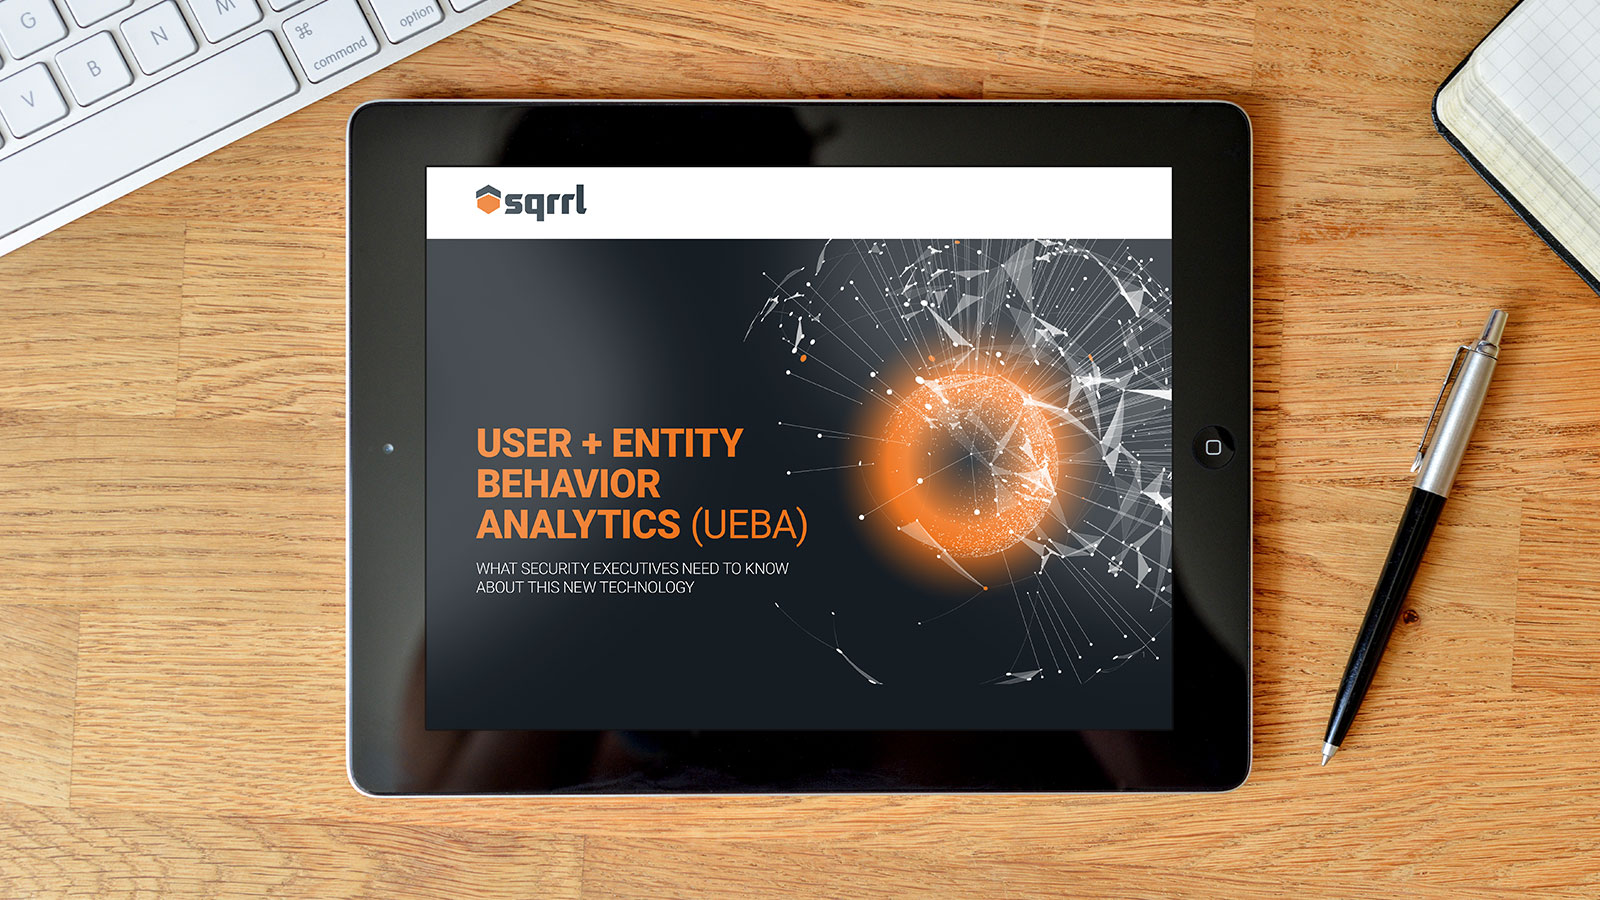 Sqrrl "User + Entity Behavior Analytics" eBook Design